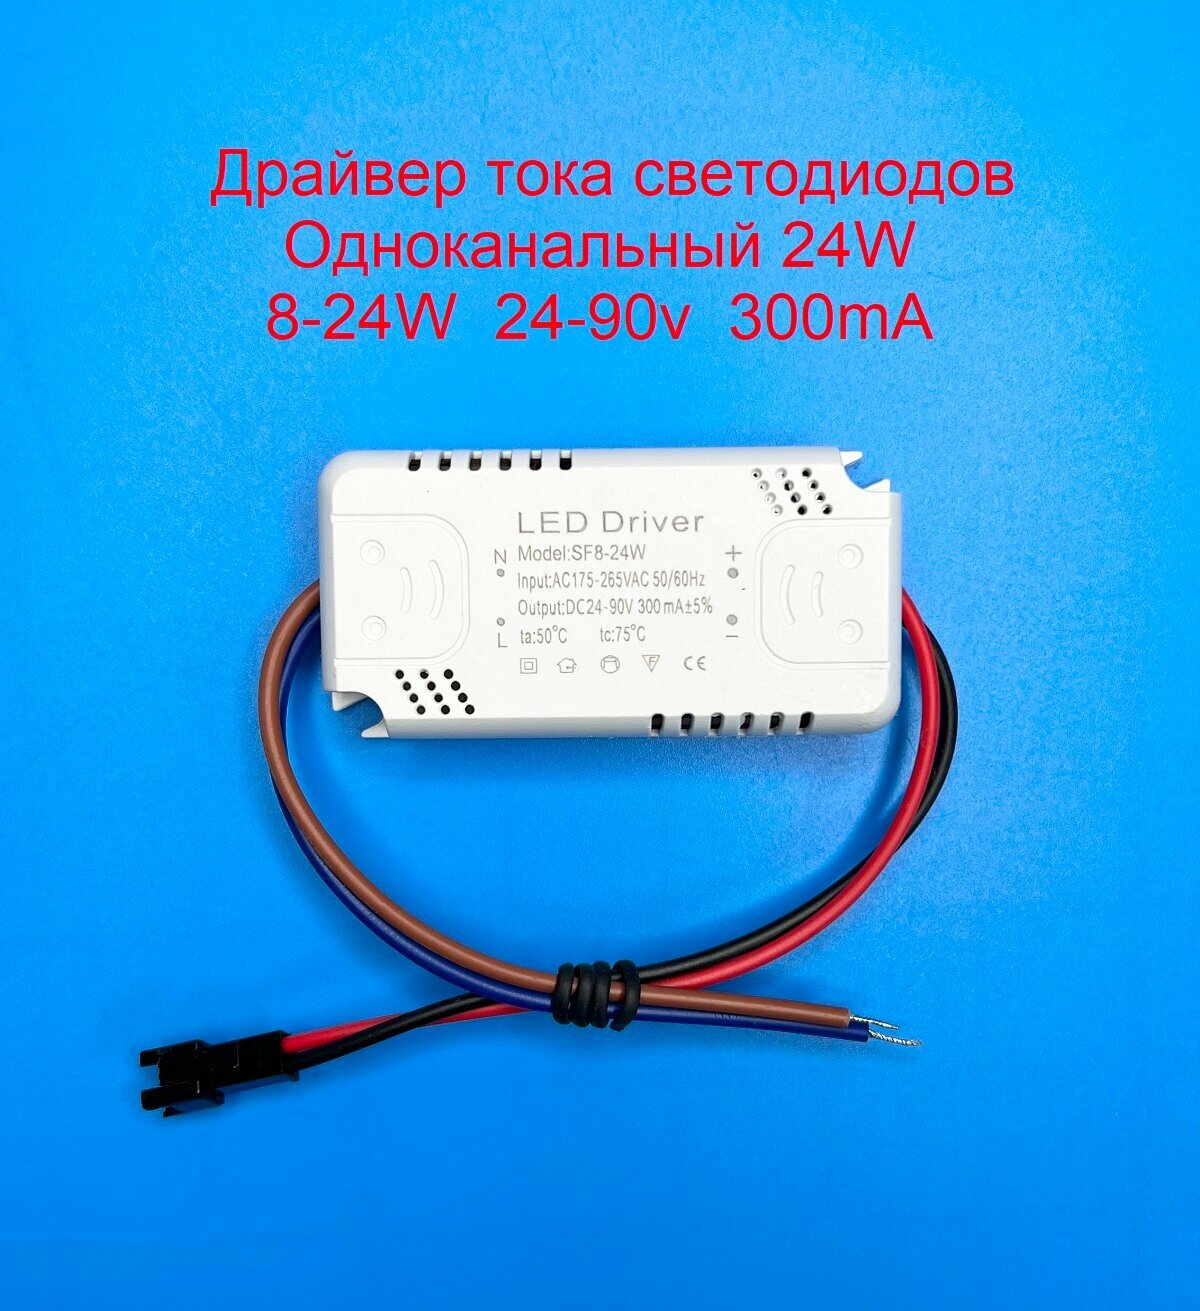 Драйвер тока светодиодов одноканальный AC-DC 24w 8-24*1w 24-90v 300mA